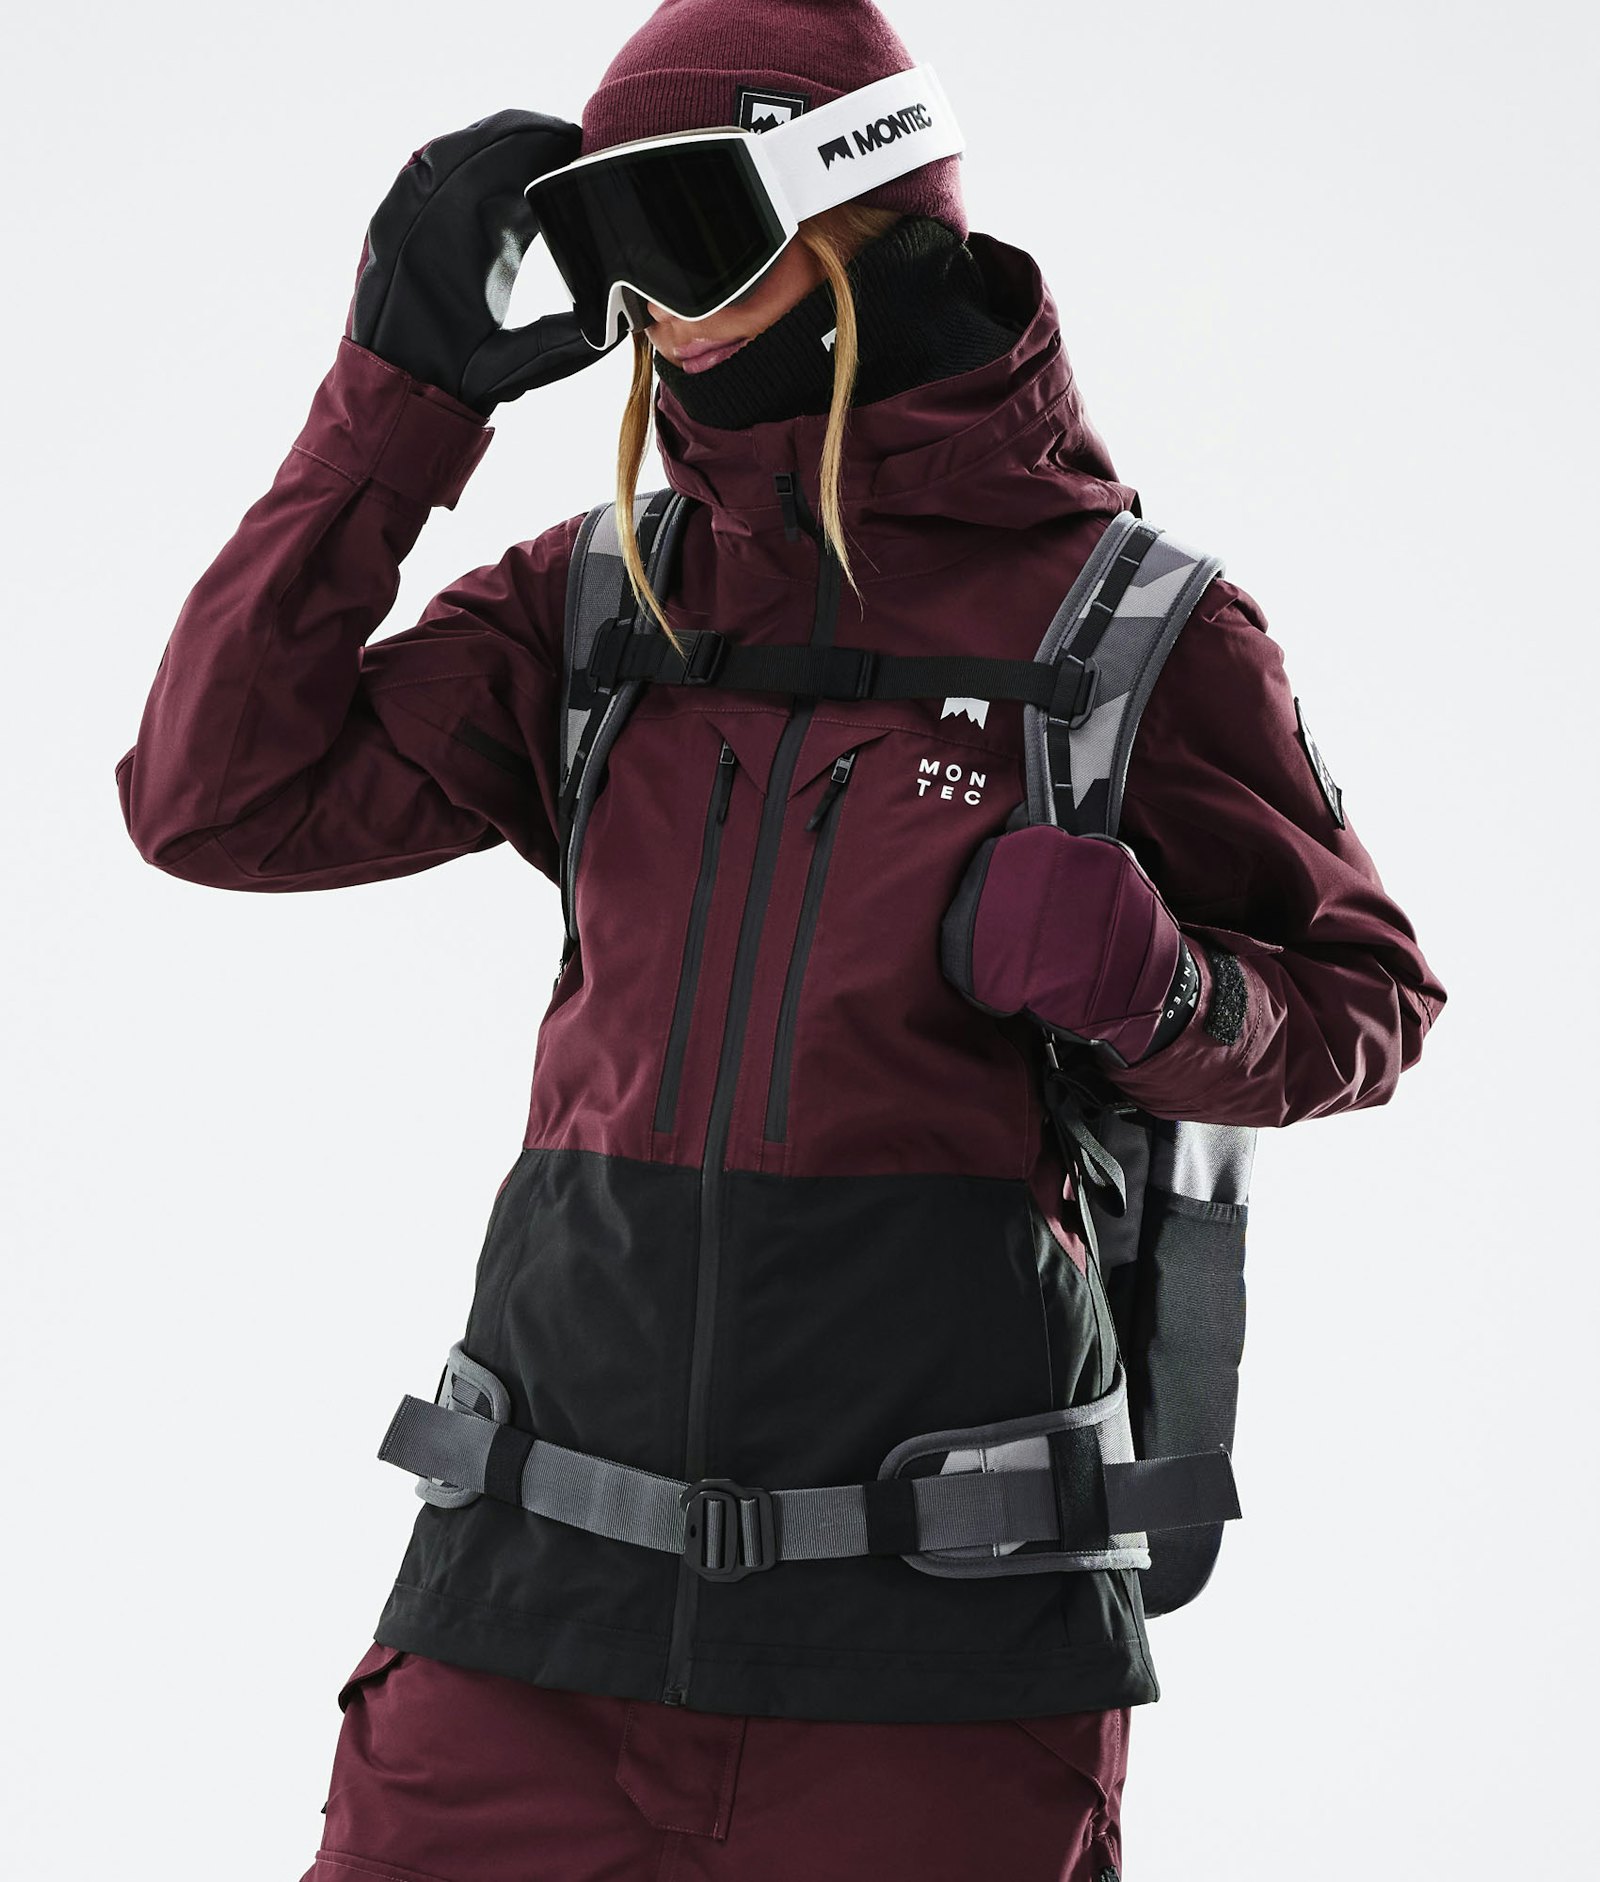 Moss W 2021 Snowboardjakke Dame Burgundy/Black